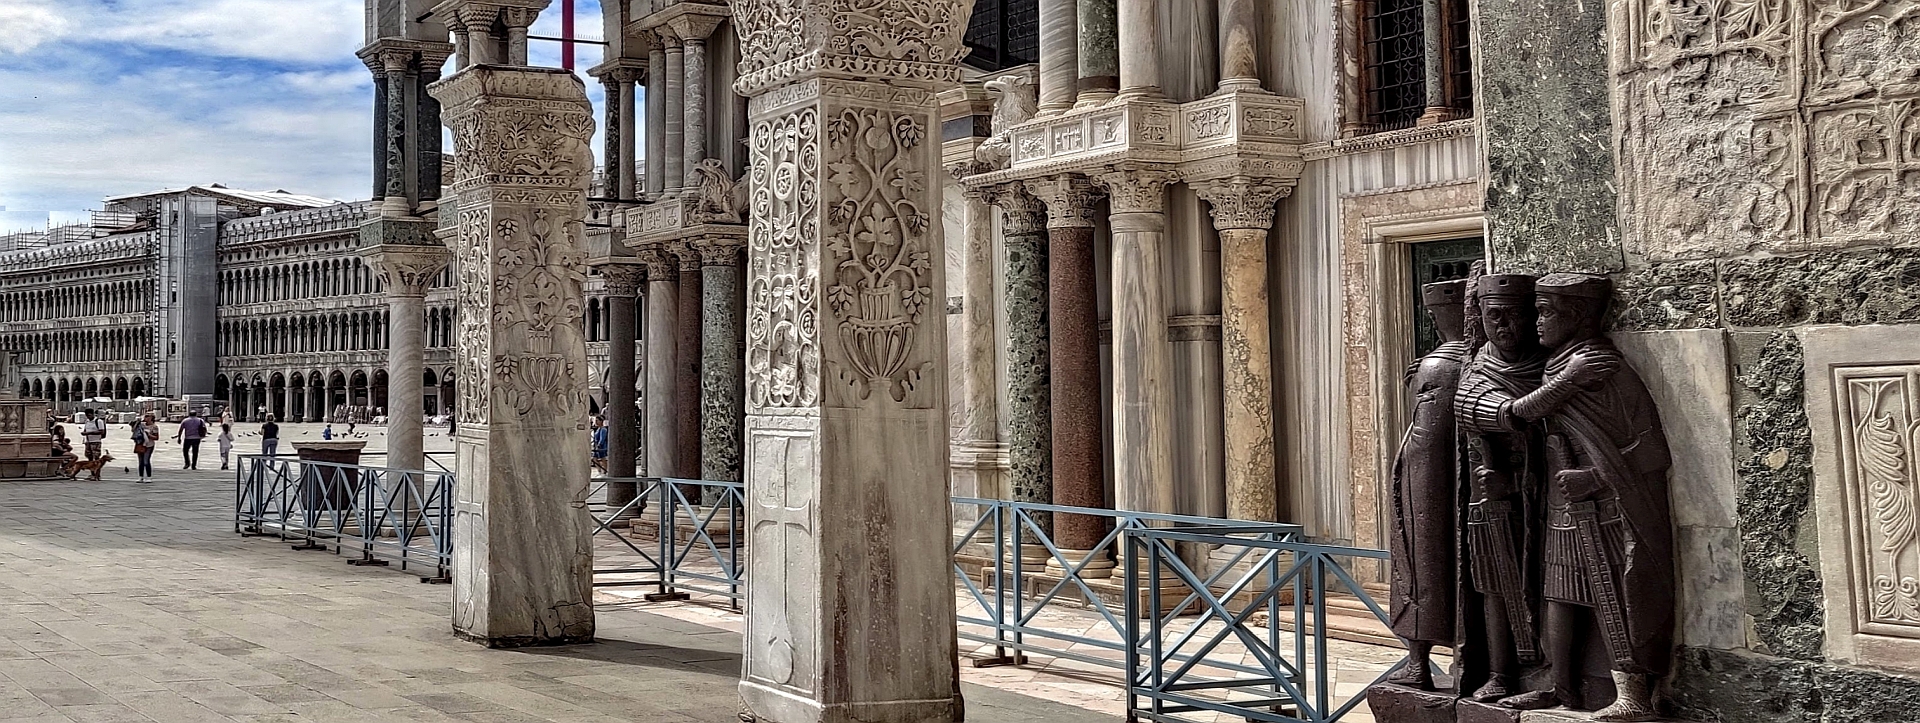 Original venezianisch? Nein - sondern geklaute antike Säulen und Figuren.